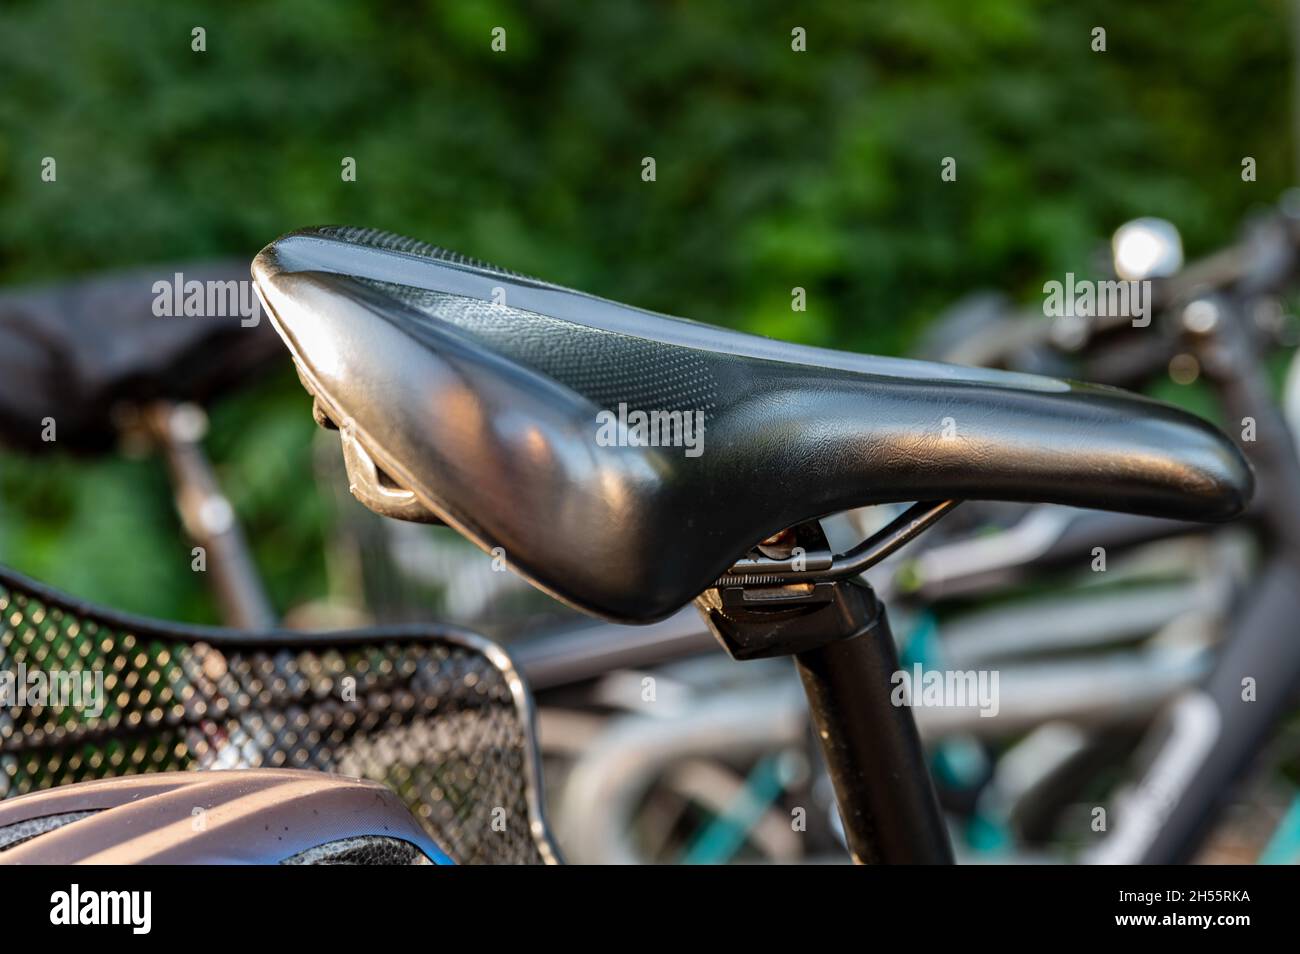 Gros plan d'une selle de vélo sur un vélo attaché Banque D'Images